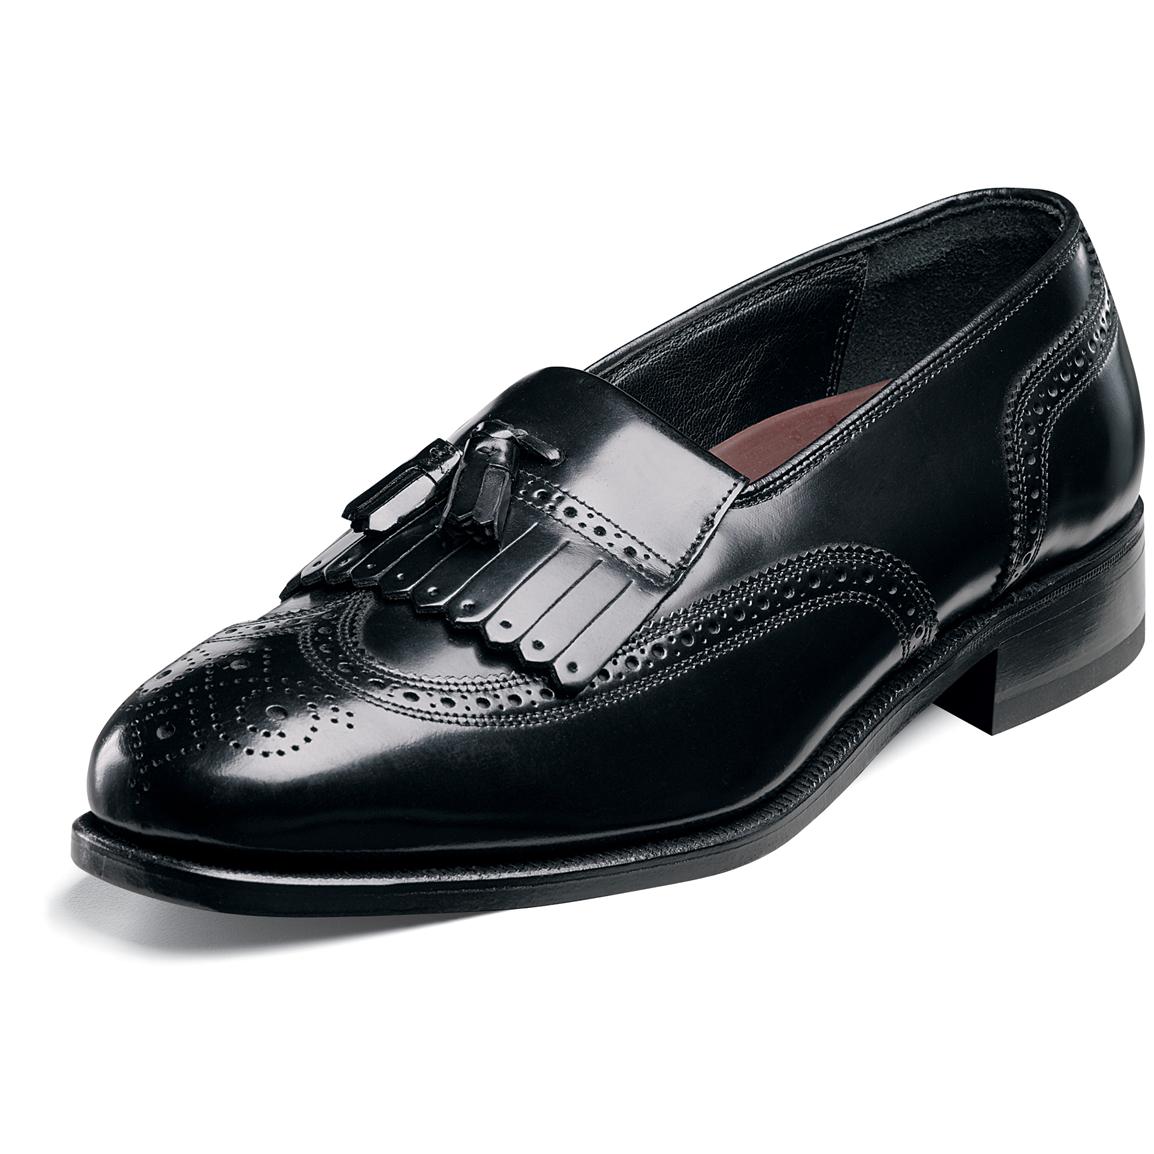 Men's Florsheim® Kiltie Tasseled Wing Tip Lexington Shoes, Black ...